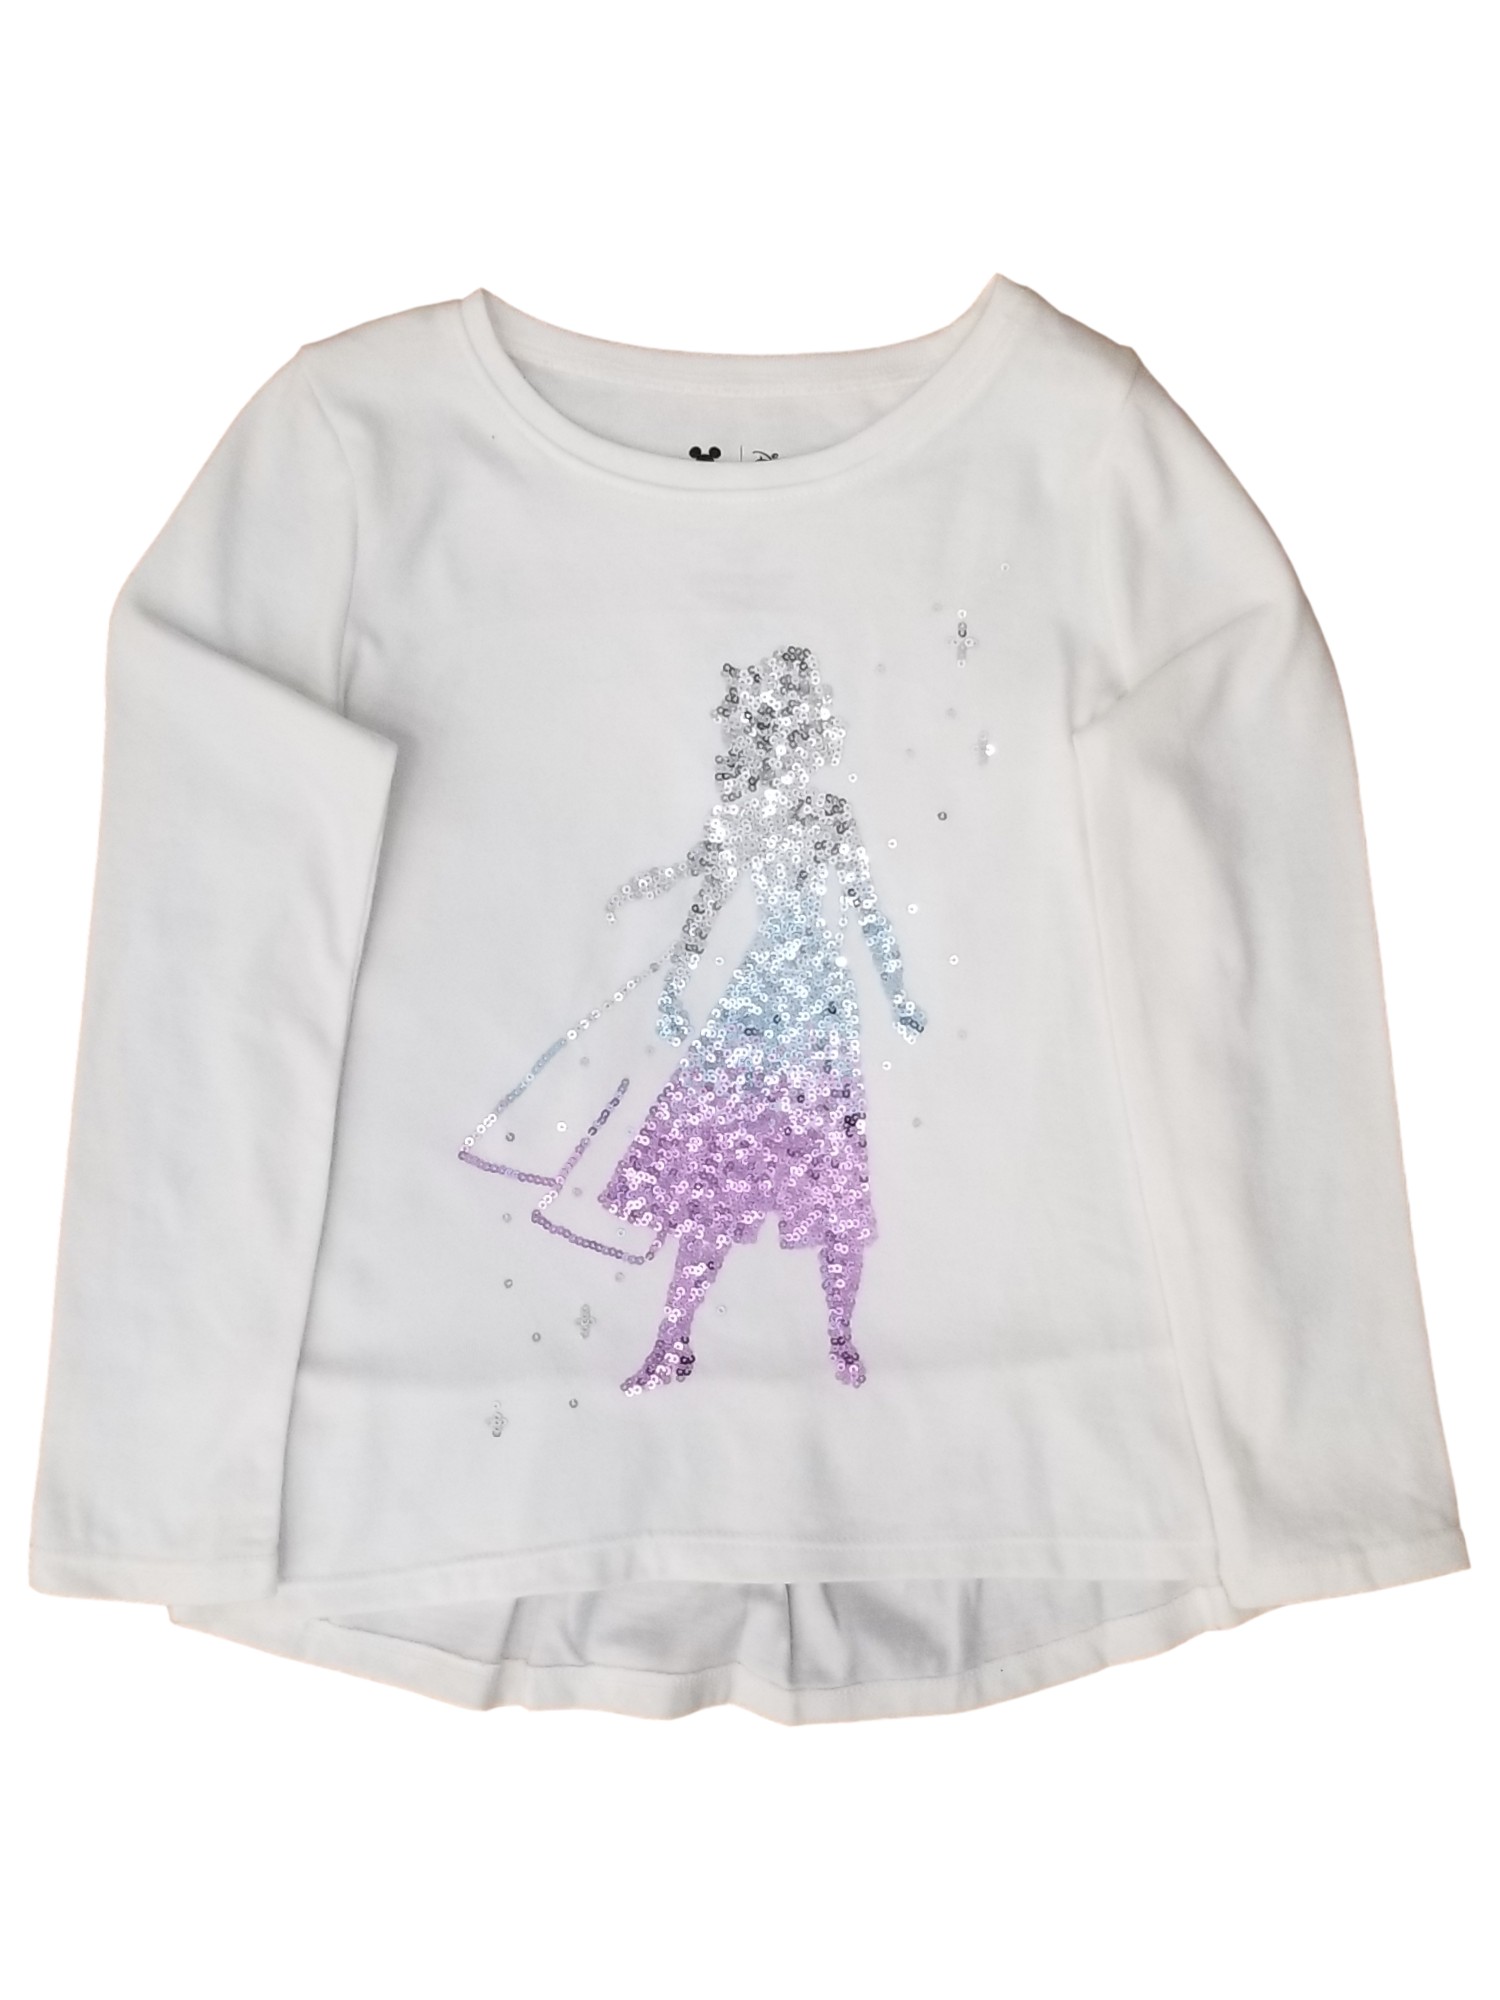 Disney Frozen Elsa Girls White Long Sleeve Purple Blue Sequins Tee Shirt T-Shirt